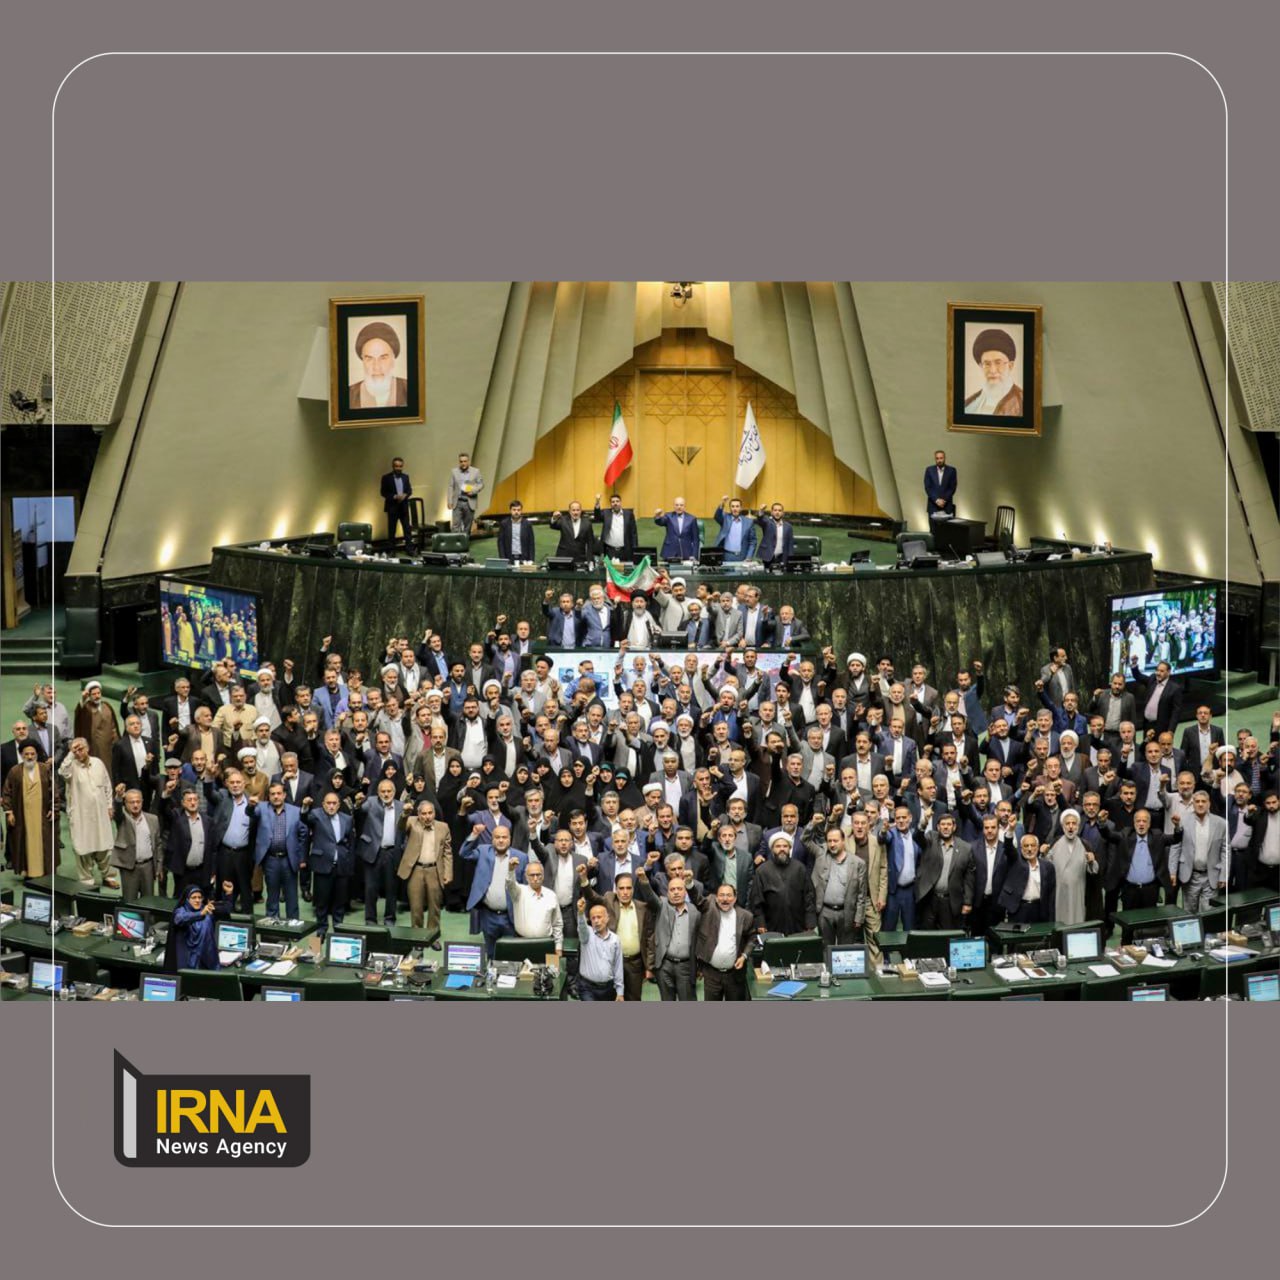 تصویری از مجلس در پی حمله ایران به اسرائیل